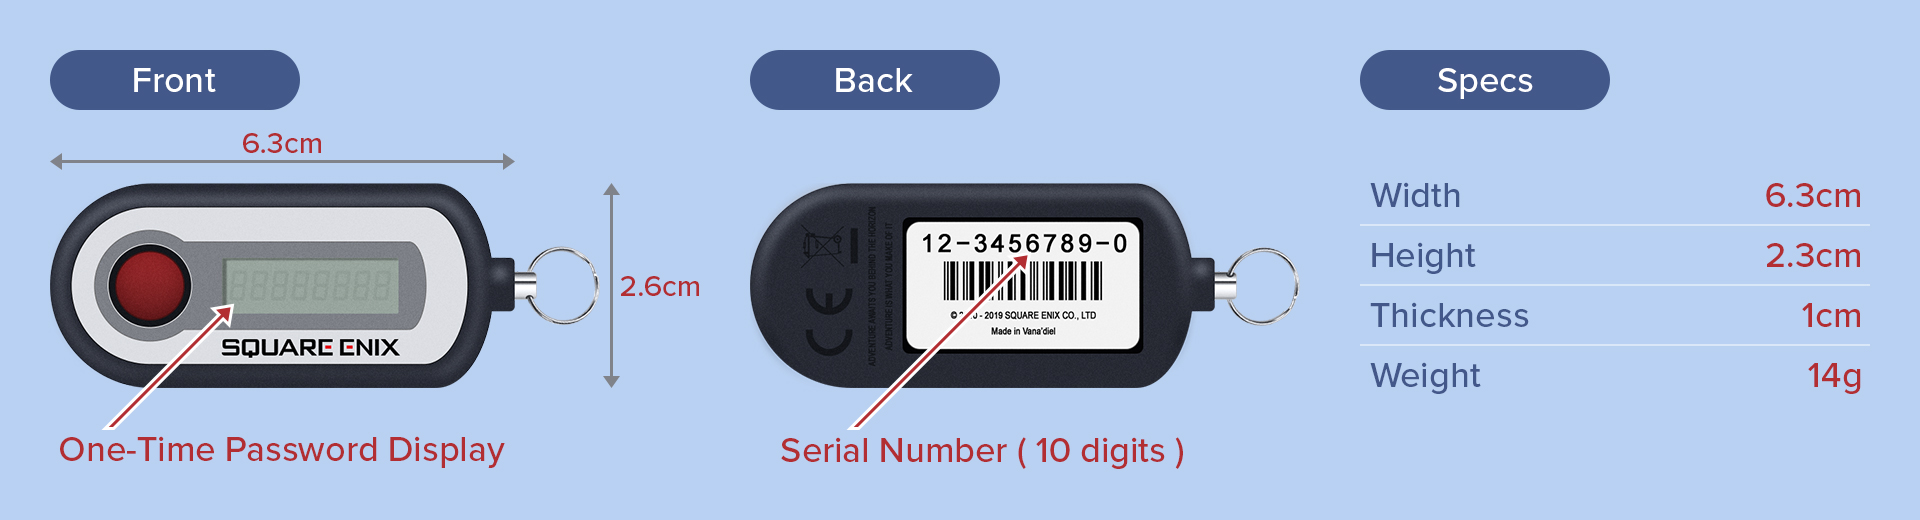 Disegno digitale delle viste anteriori e posteriori del token di sicurezza, insieme a una tabella delle sue dimensioni